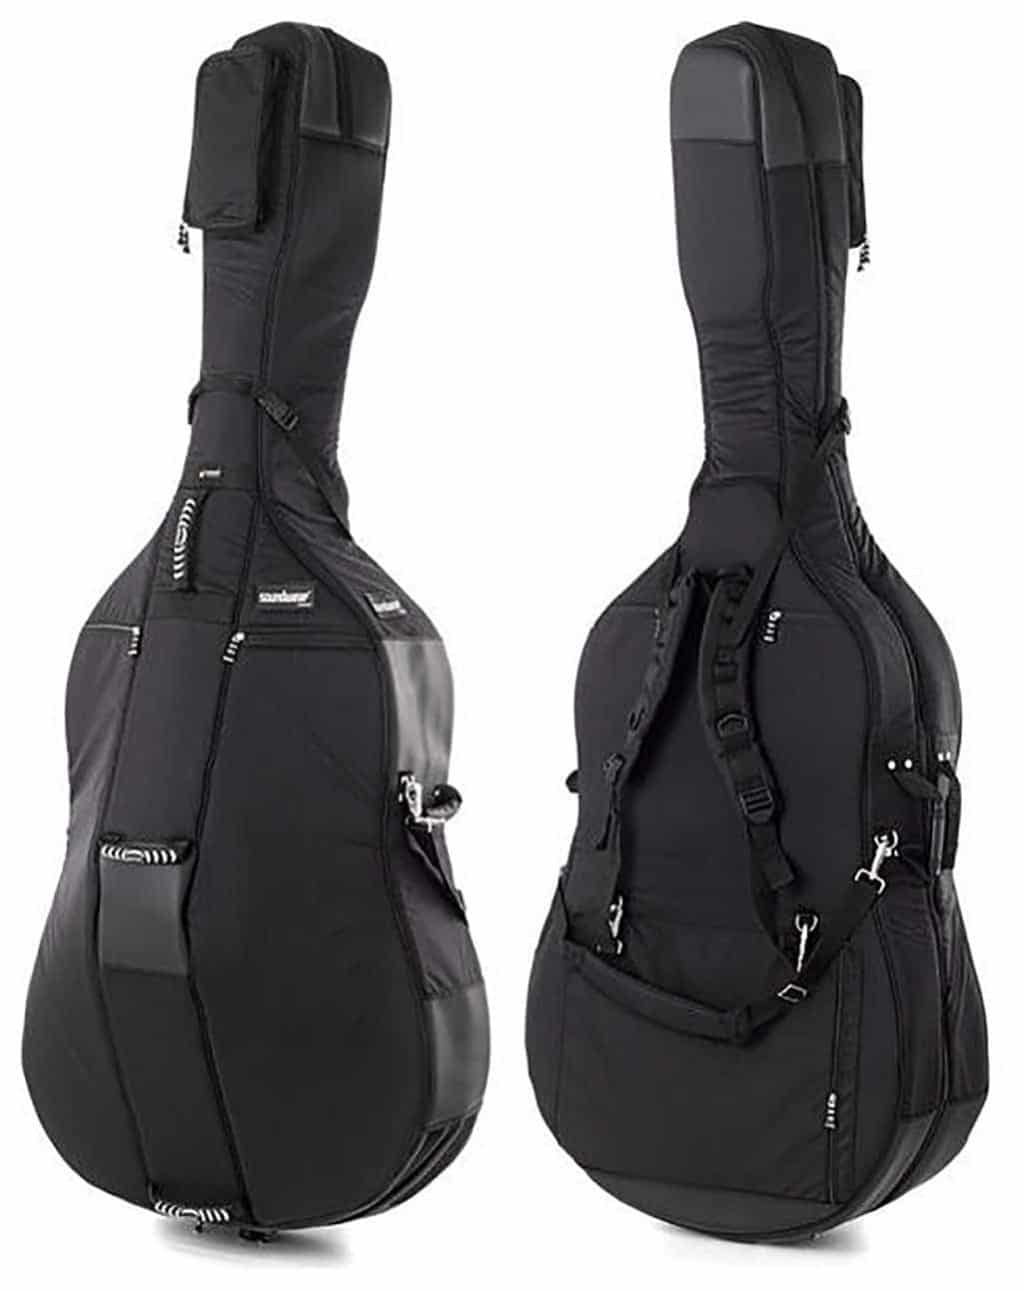 Soundwear Performer Double Bass Bag, Upright Bass Case